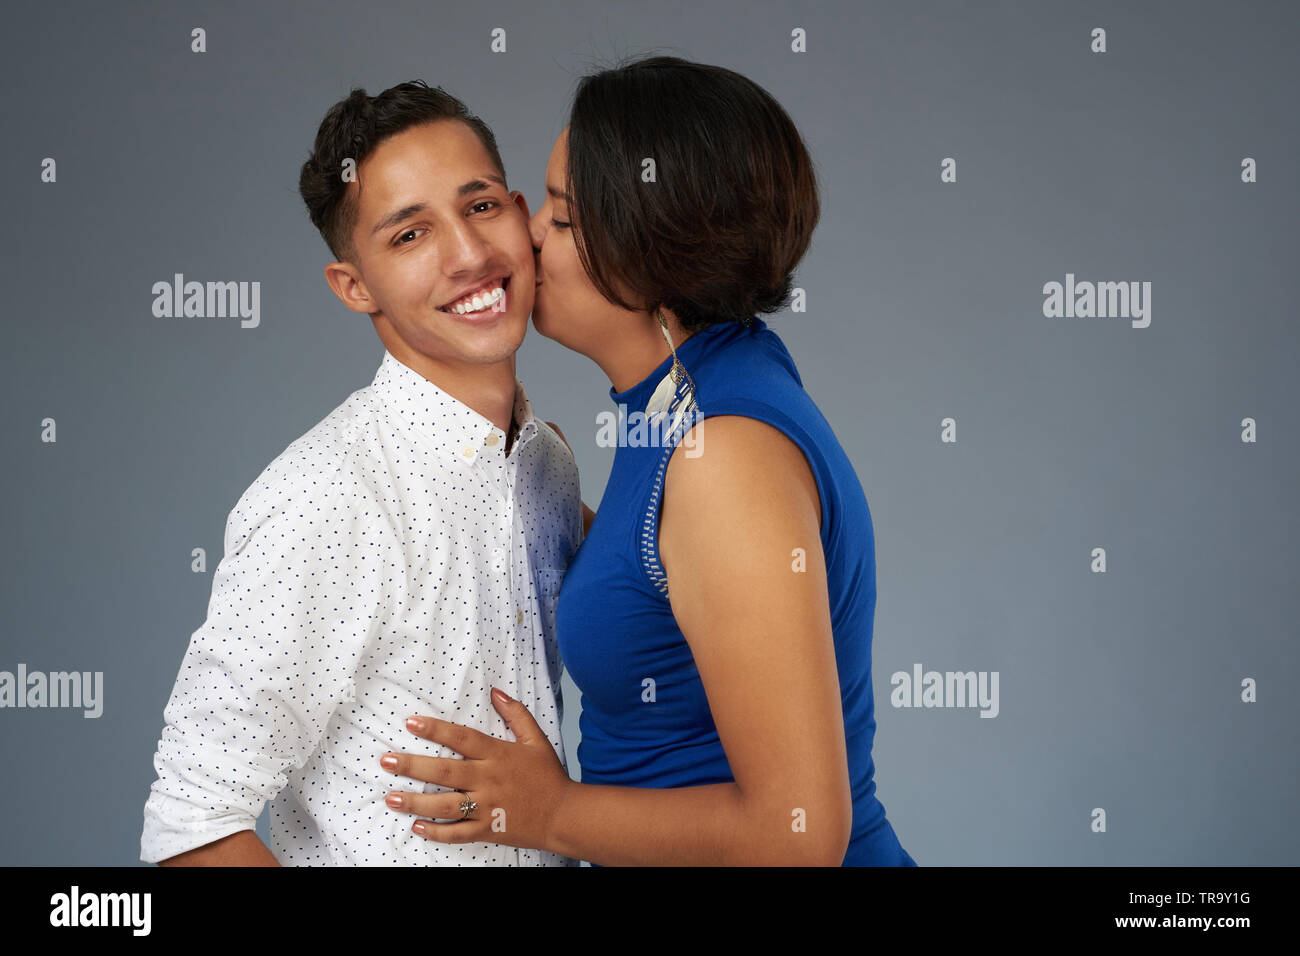 Junge Frau küssen Mann auf Grau studio Hintergrund Stockfoto